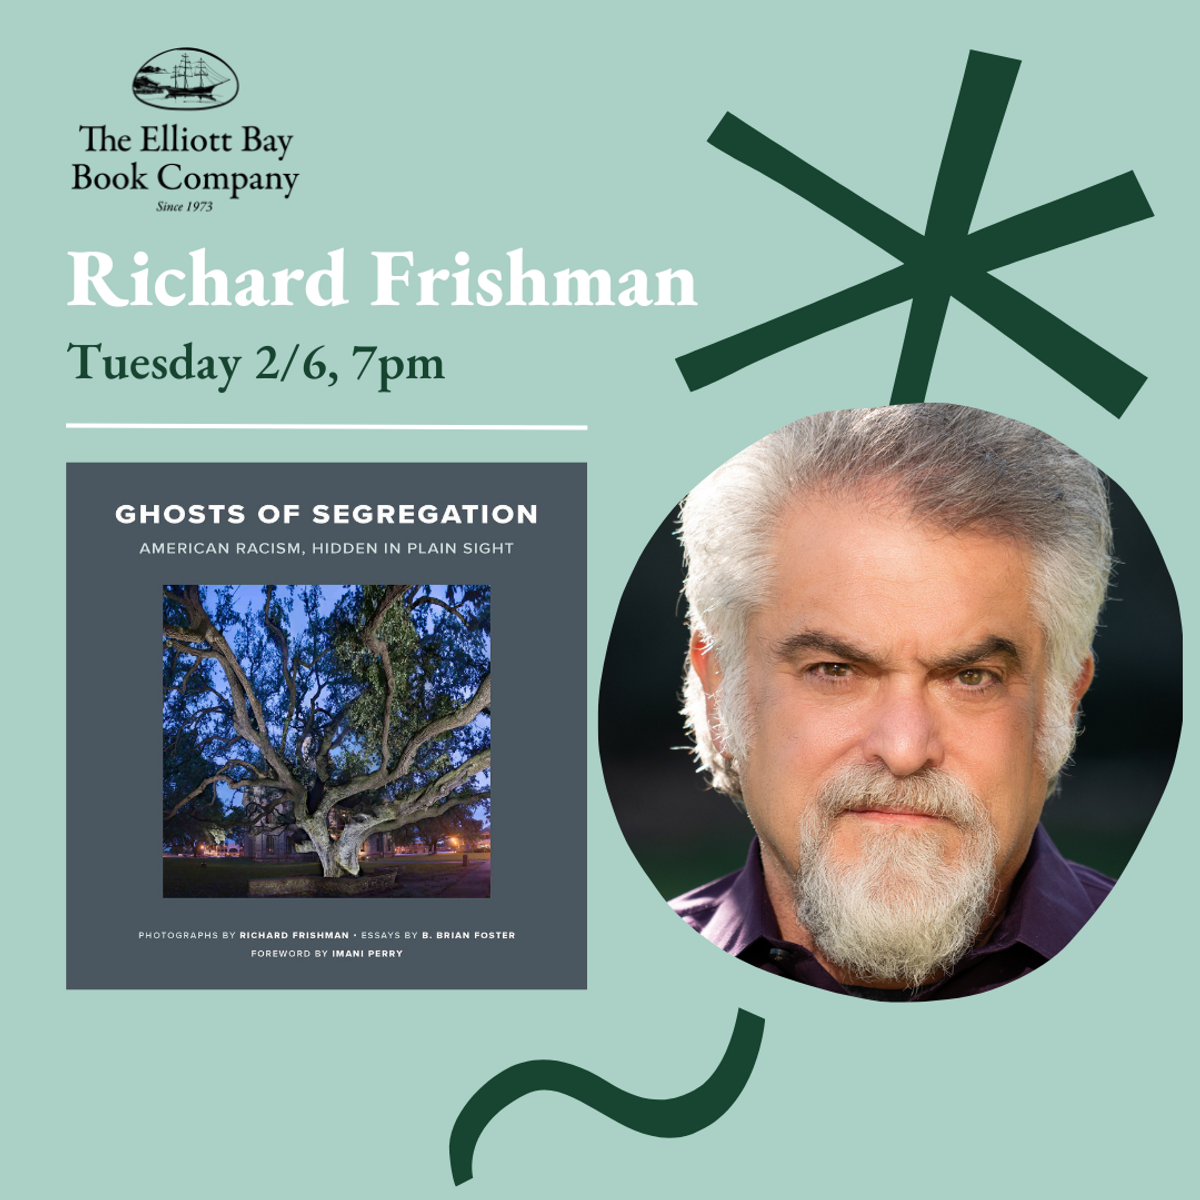 美国西雅图的艾略特湾书店将于2月6日（周二）举办Richard Frishman的活动